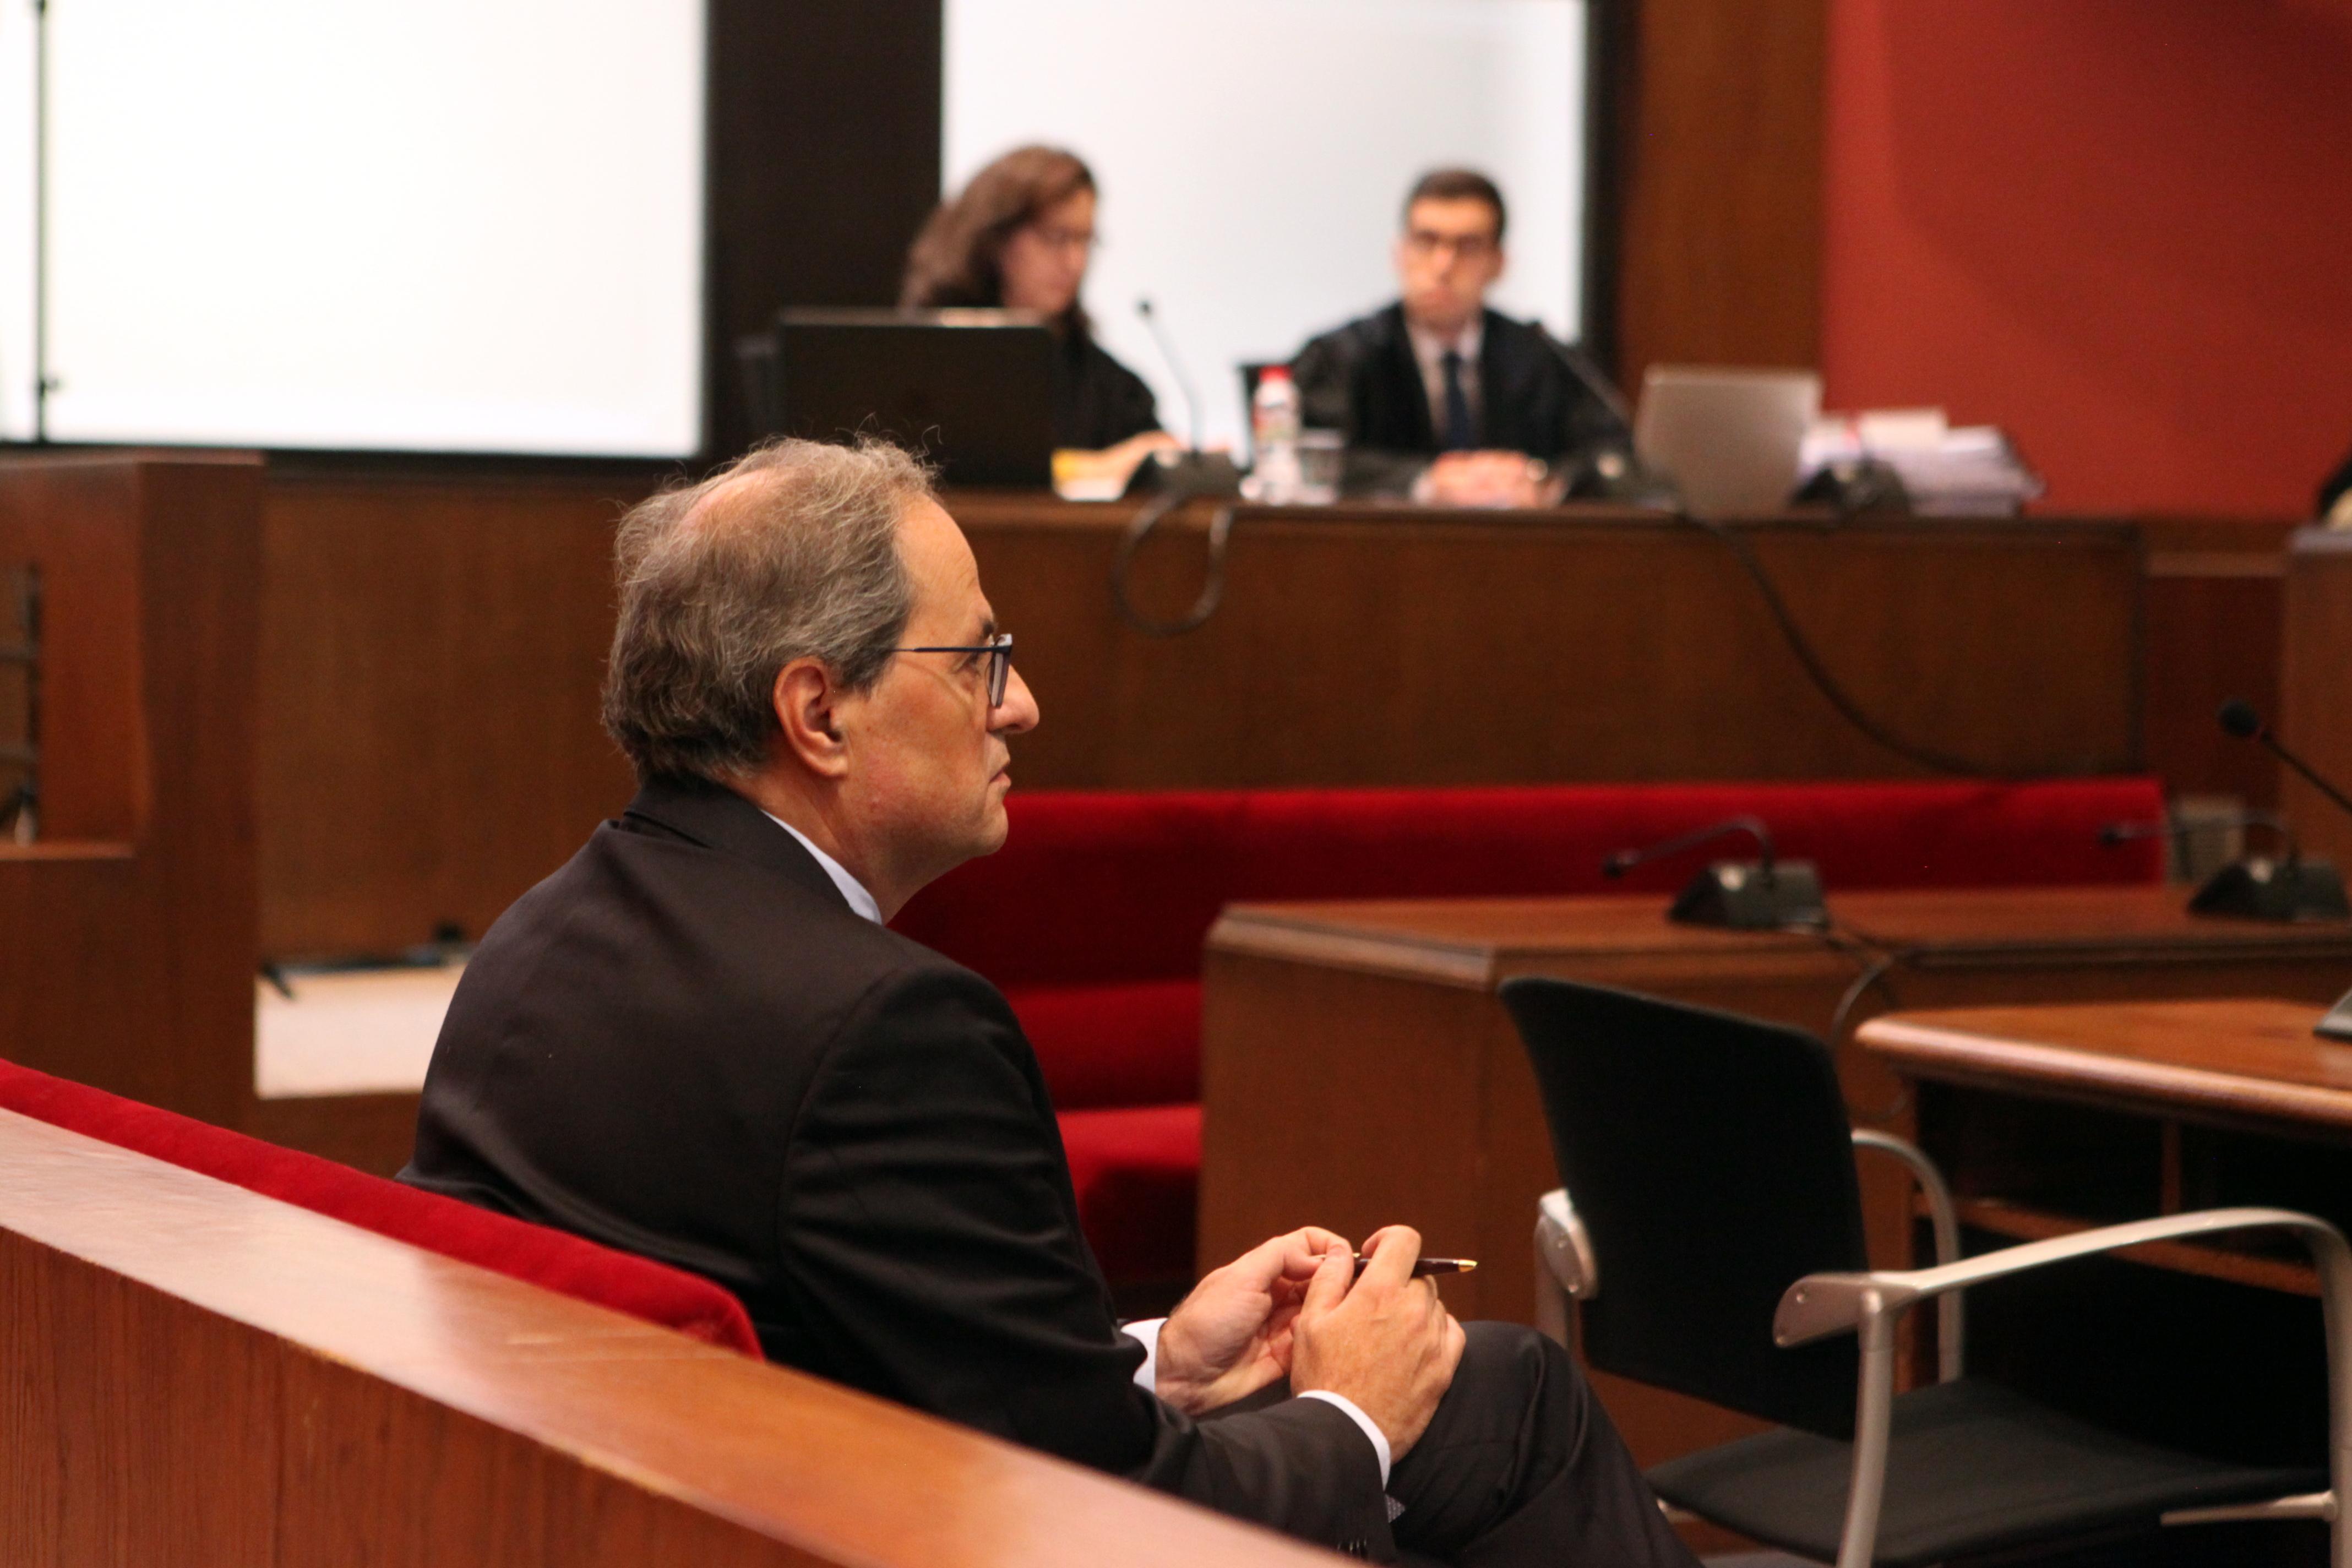 El president de la Generalitat Quim Torra en el banquillo del Tribunal Superior de Justicia de Cataluña. Fuente: EP.